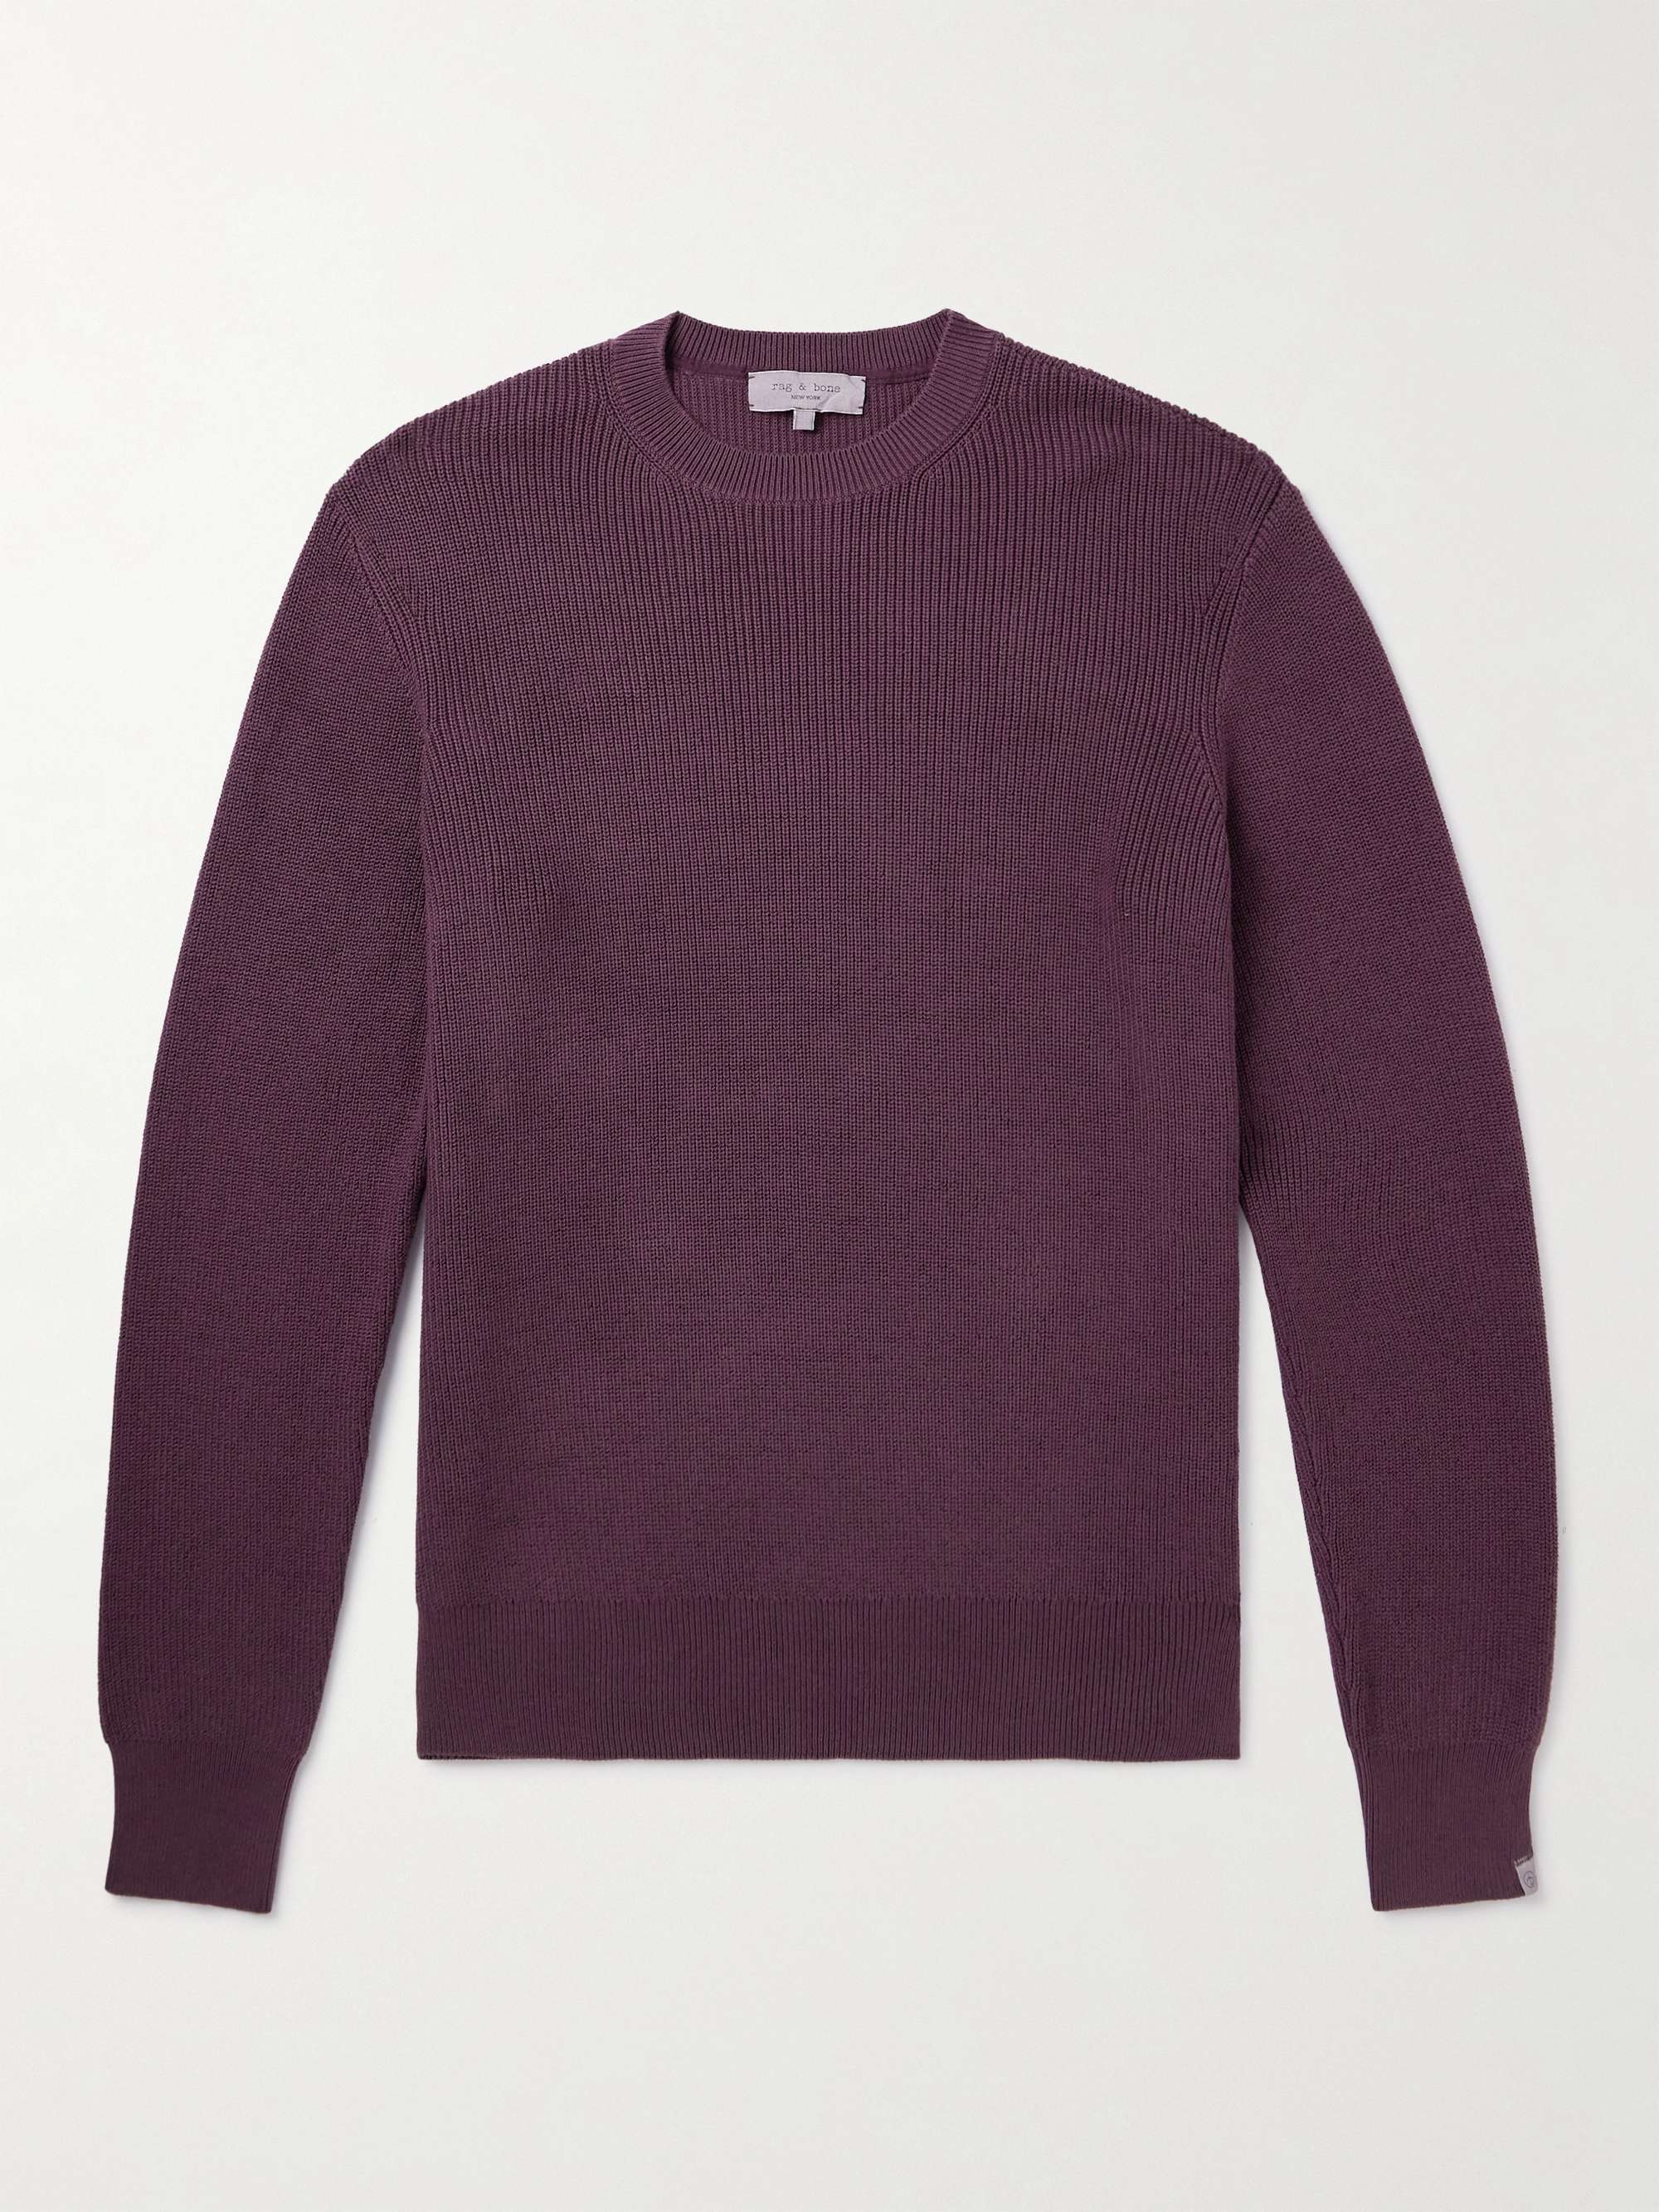 RAG & BONE Dexter Ribbed Organic Cotton-Blend Sweater for Men | MR PORTER